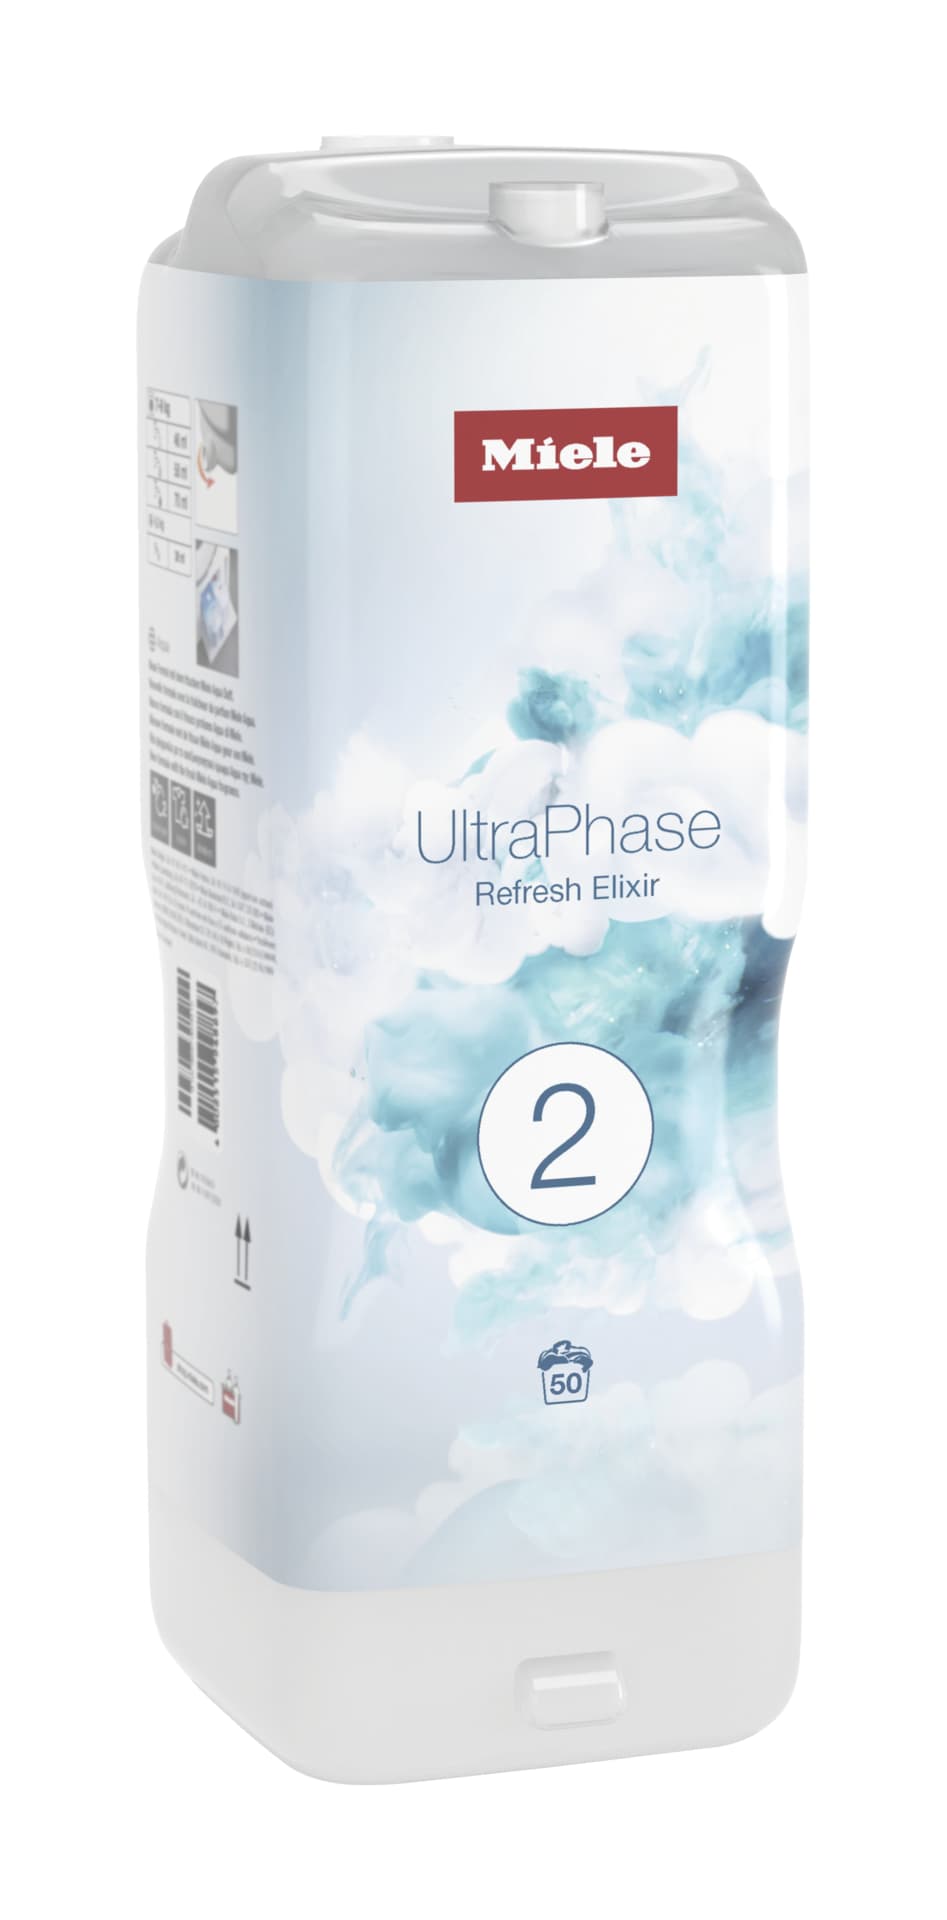 Miele Waschmittel WA UP2 RE 1401 L Miele UltraPhase 2 Refresh Elixir Limited Edition gegen schlechte Gerüche und 